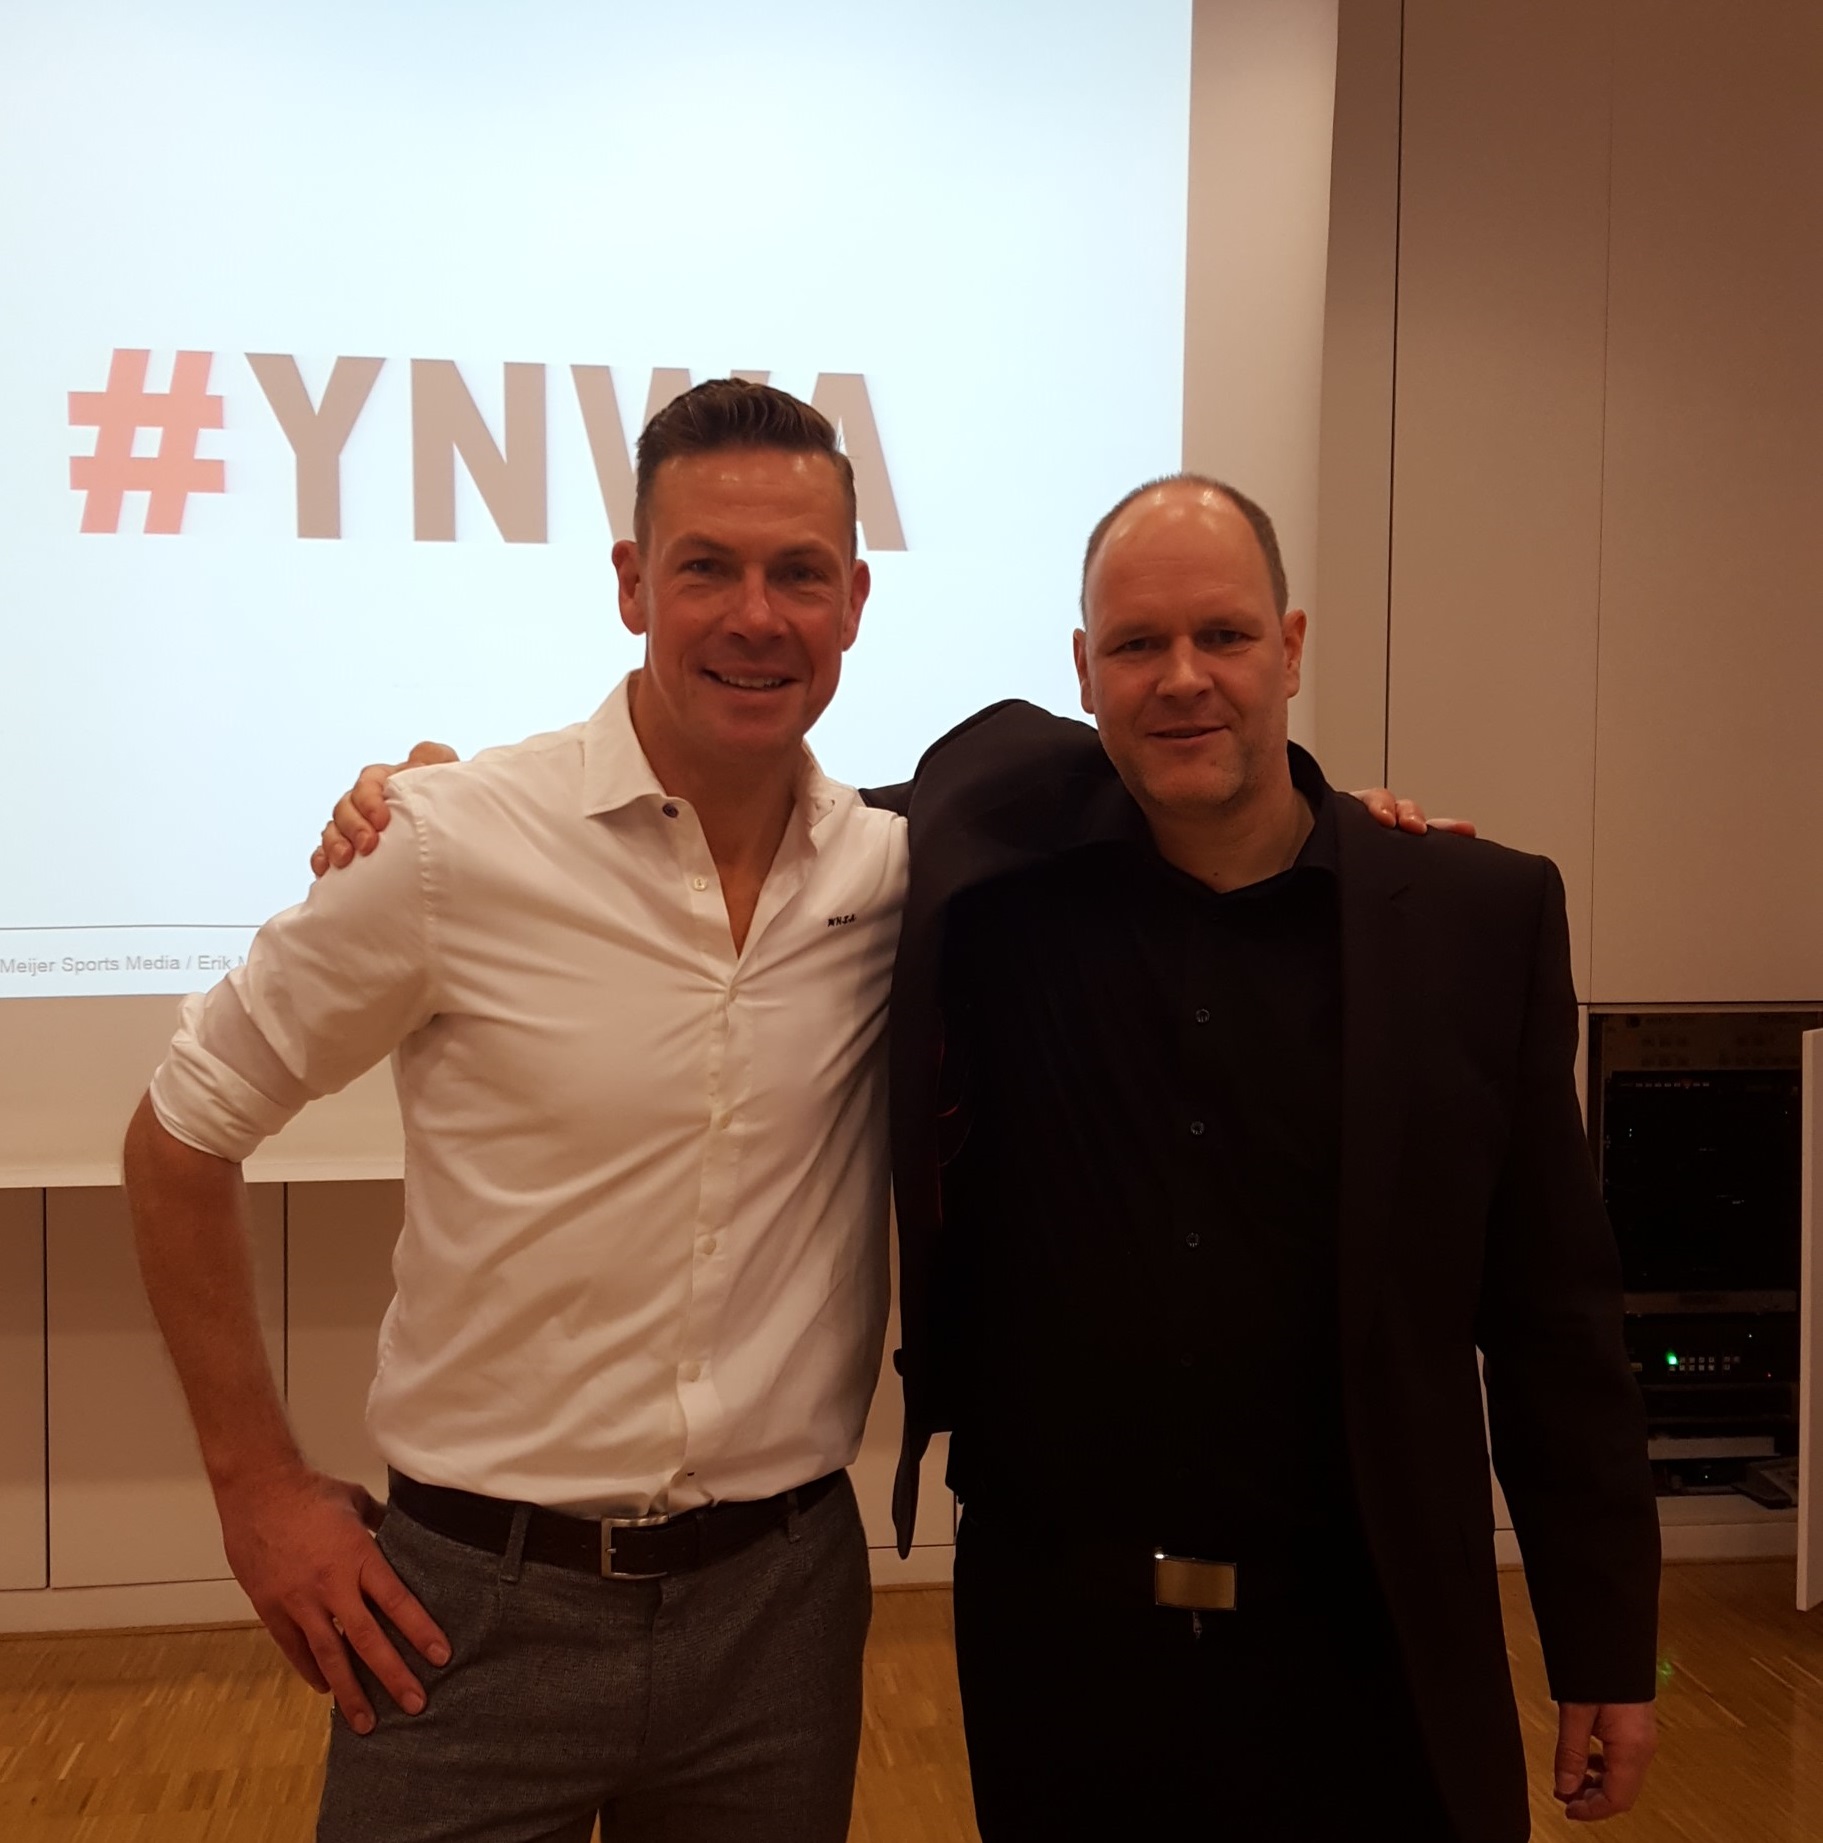 keynote YNWA - Zusammenarbeit Management Führung